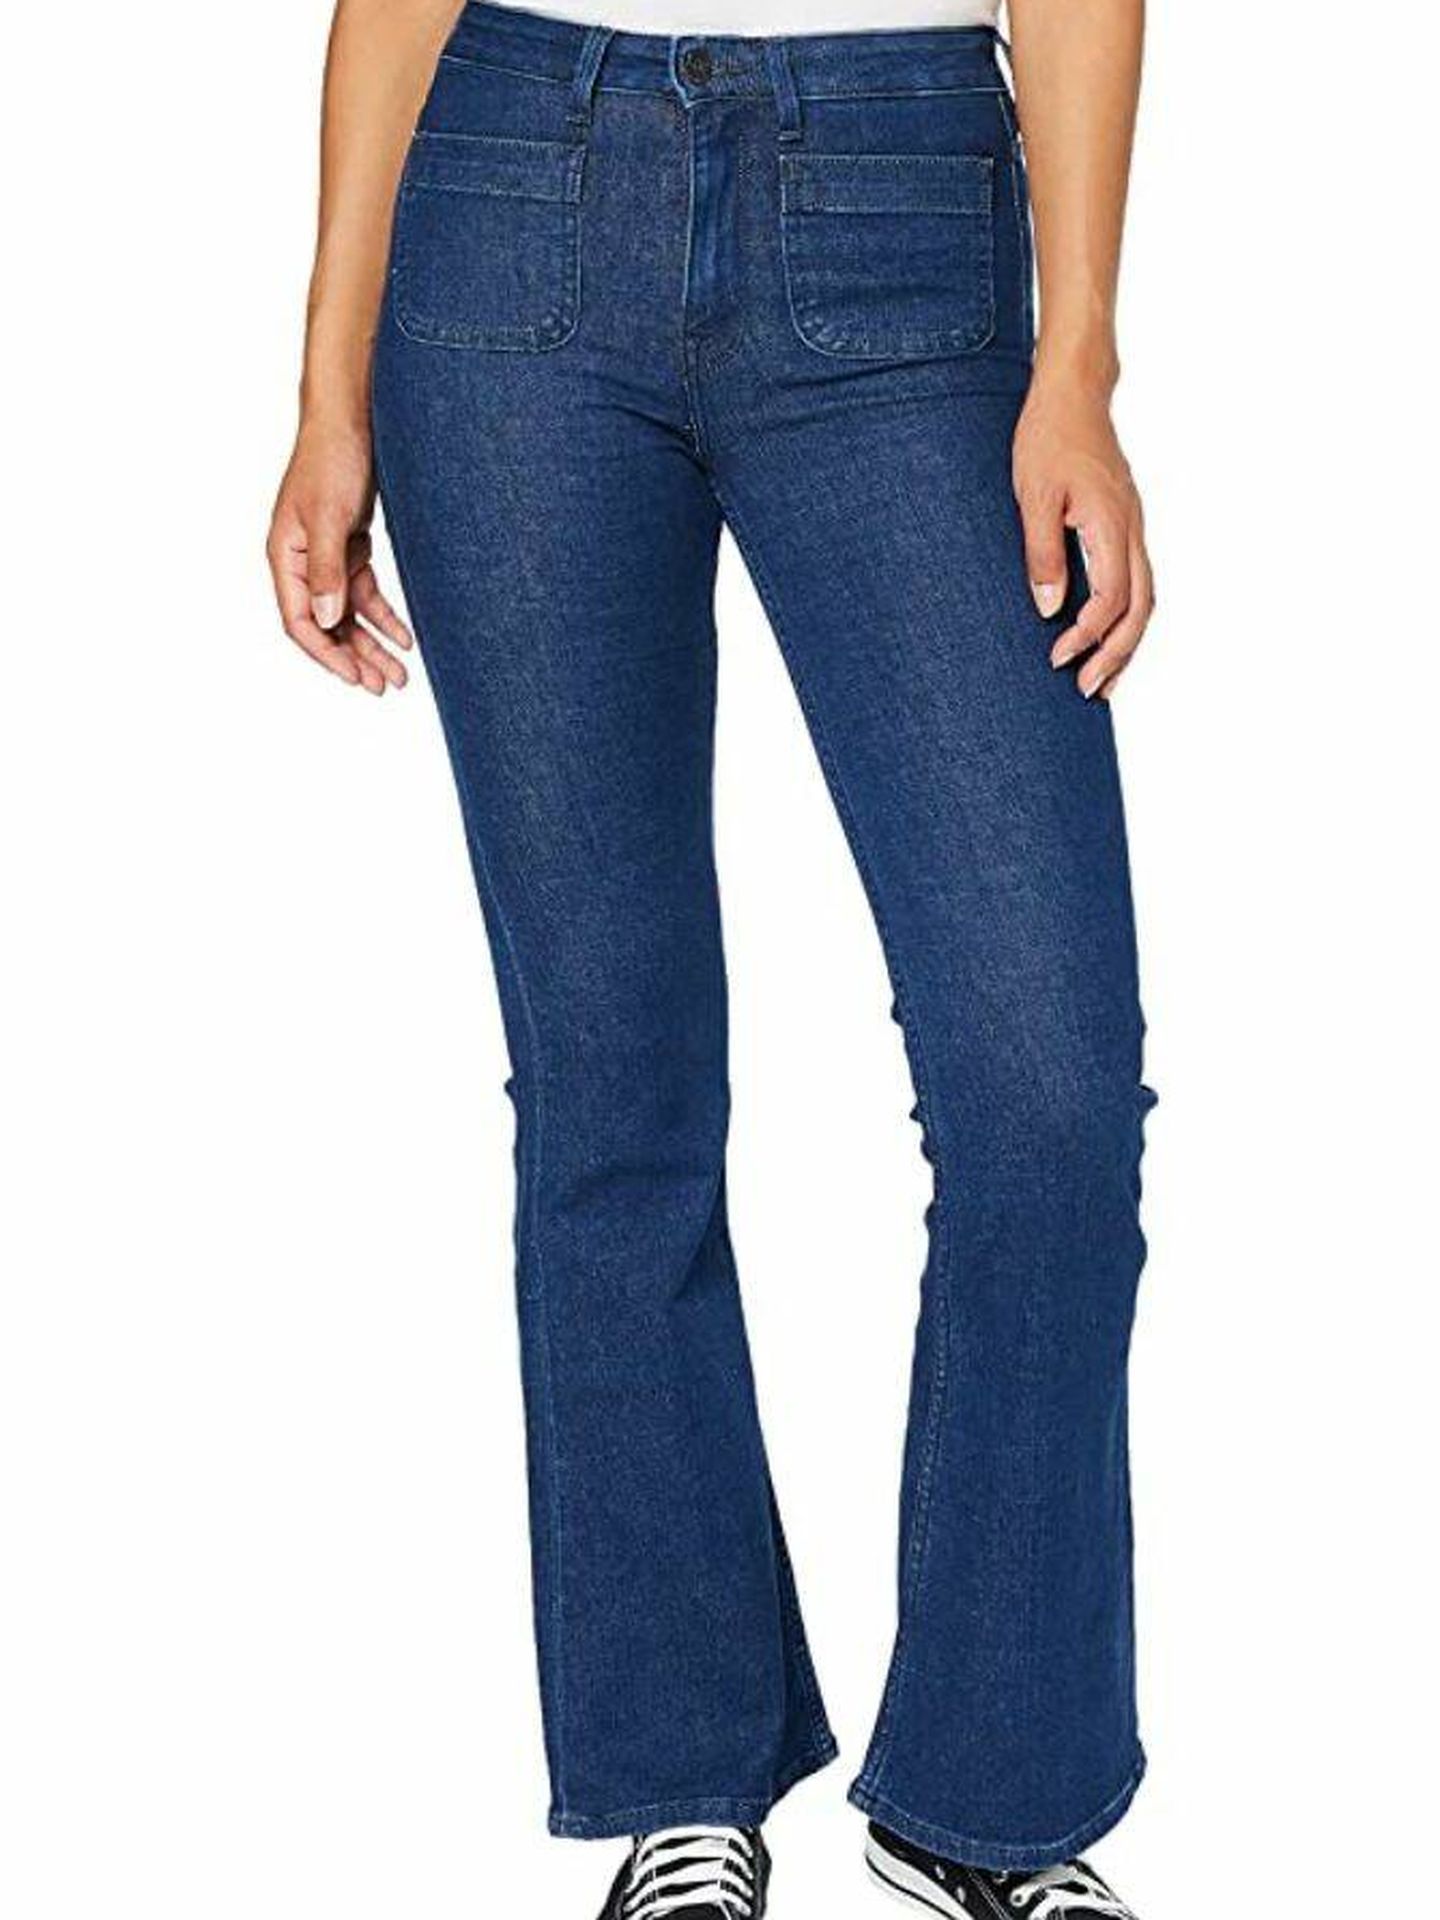 Los jeans más favorecedores para las mujeres con curvas y un